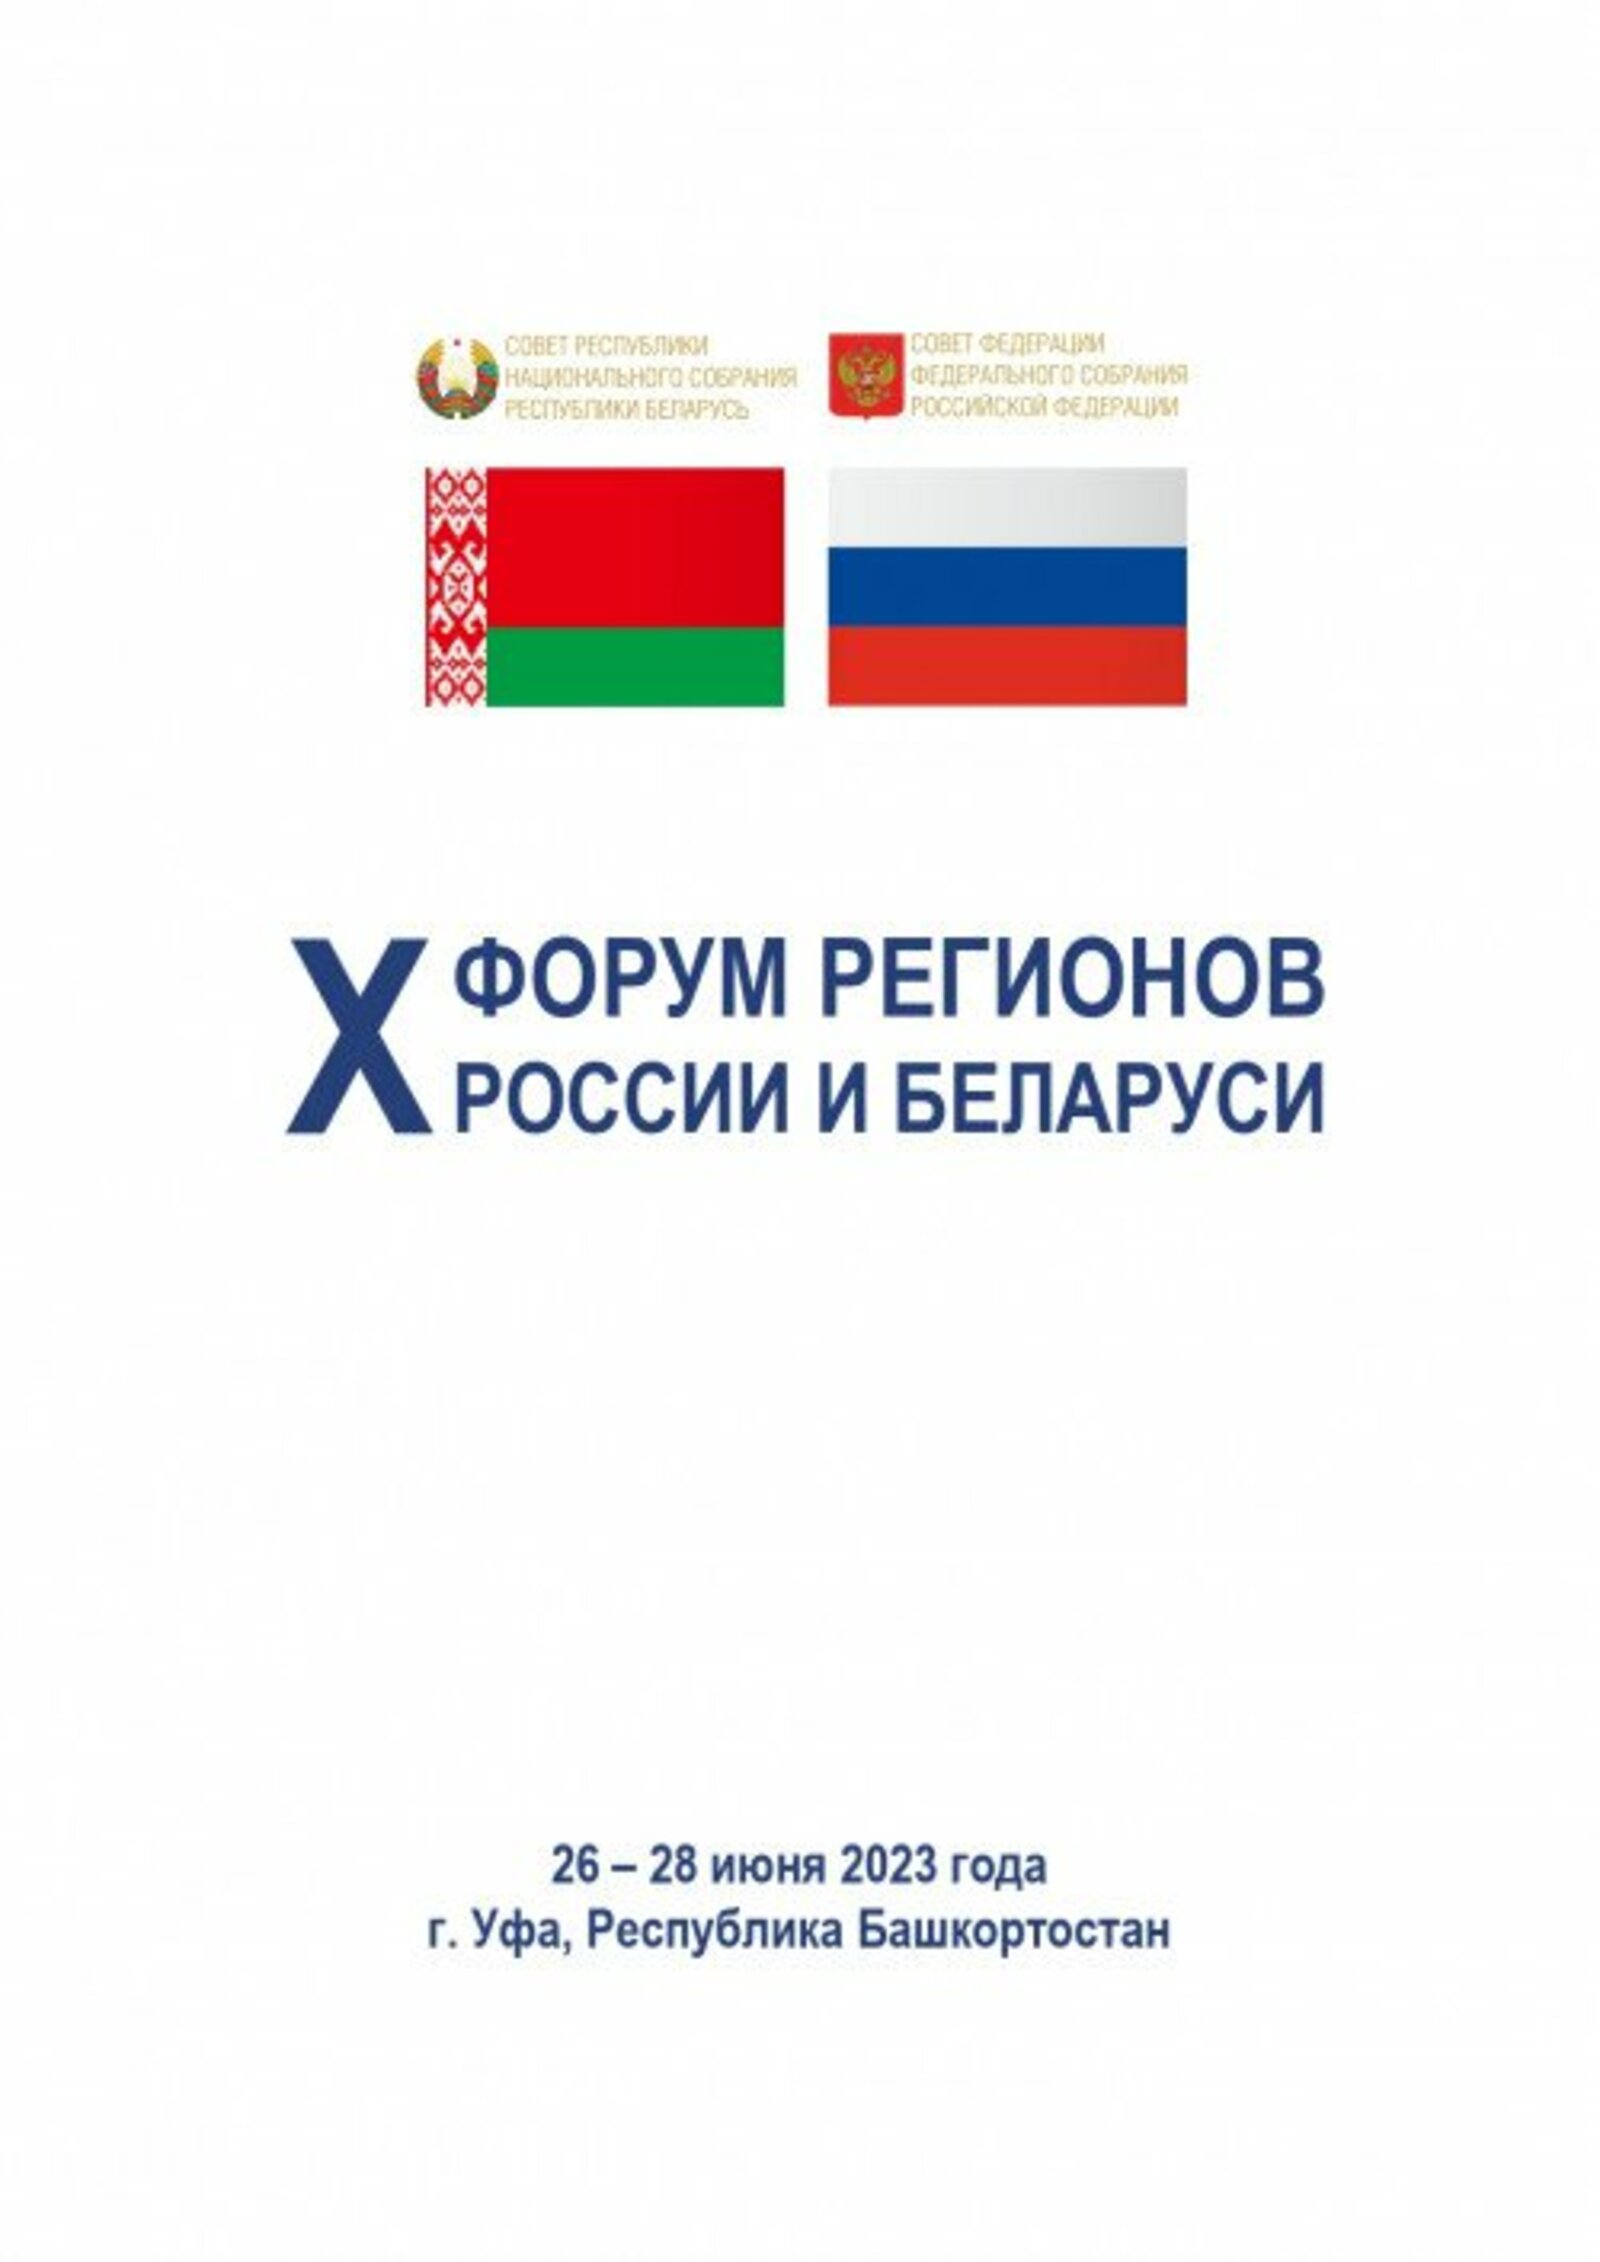 Русия һәм Беларусь төбәкләре форумында партнерлык турында фикер алышачаклар